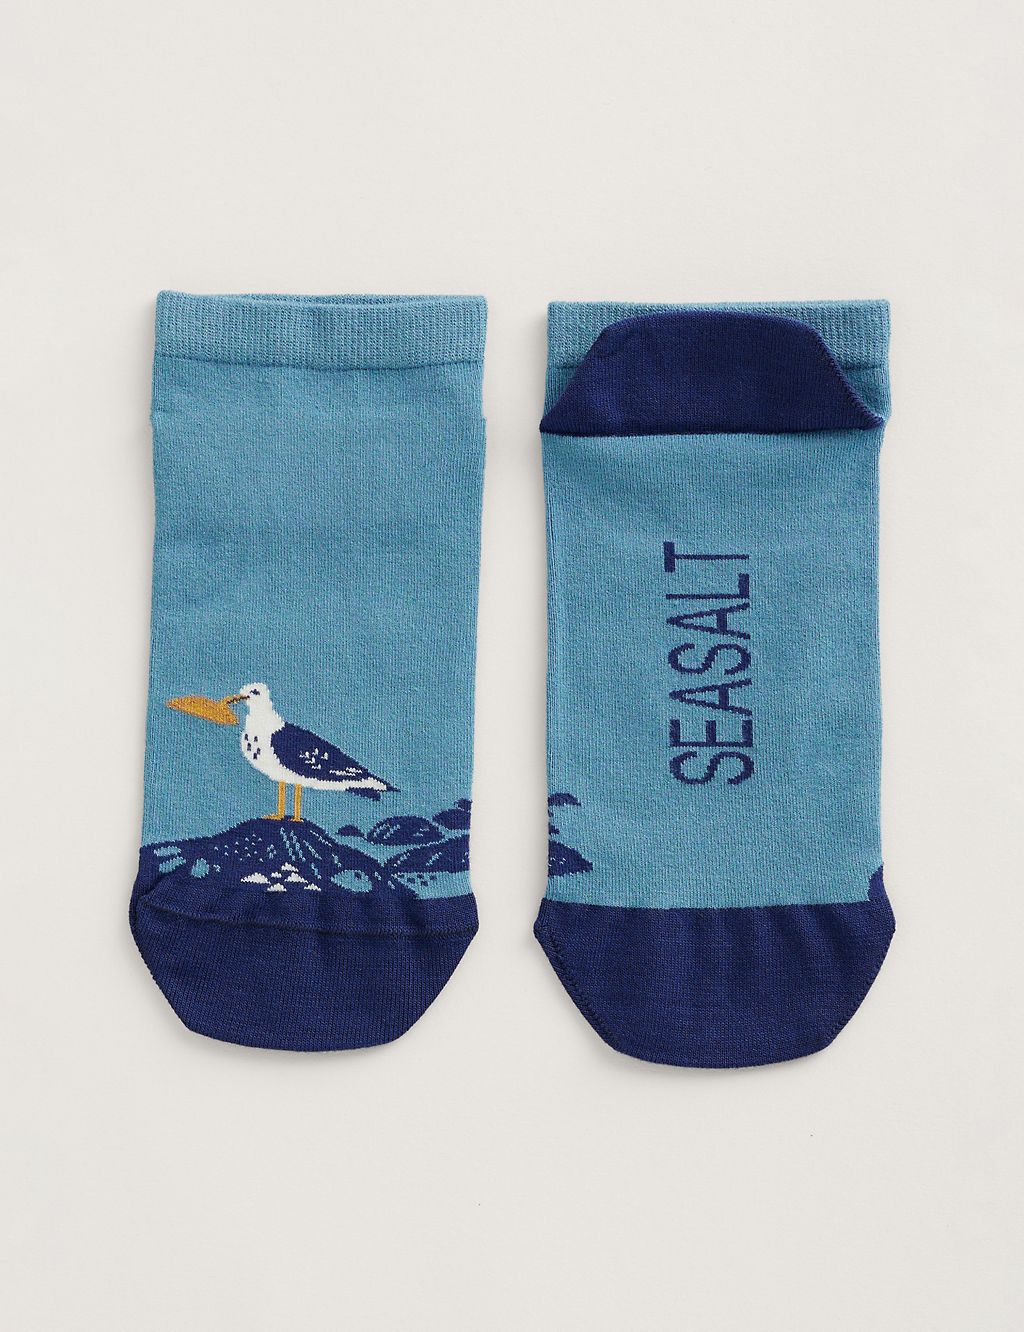 Seagull Trainer Socks 1 of 1